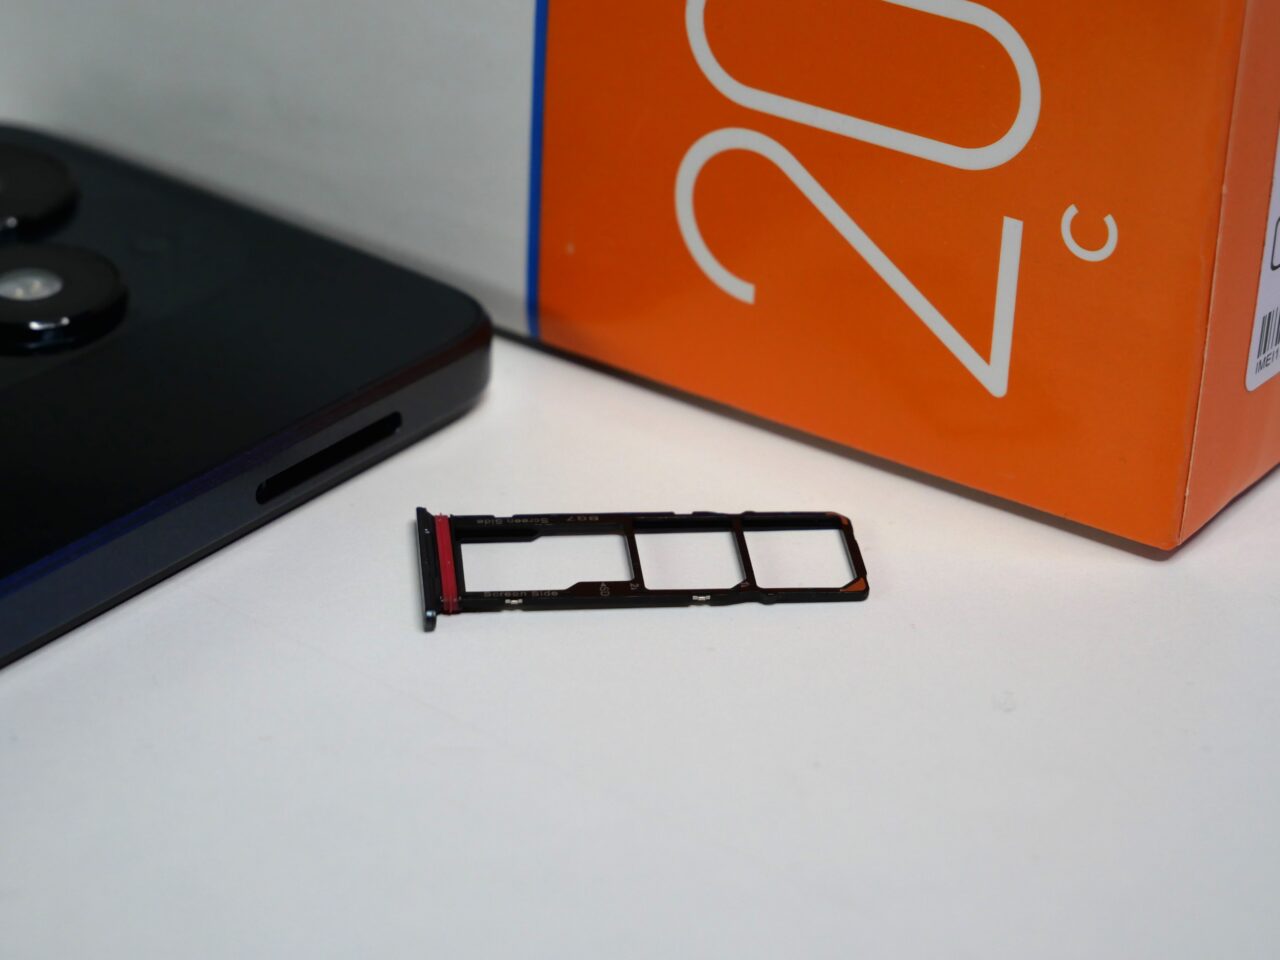 Część telefonu (tacka na kartę SIM) leży na stole obok czarnego smartfona i pomarańczowego pudełka z logo.